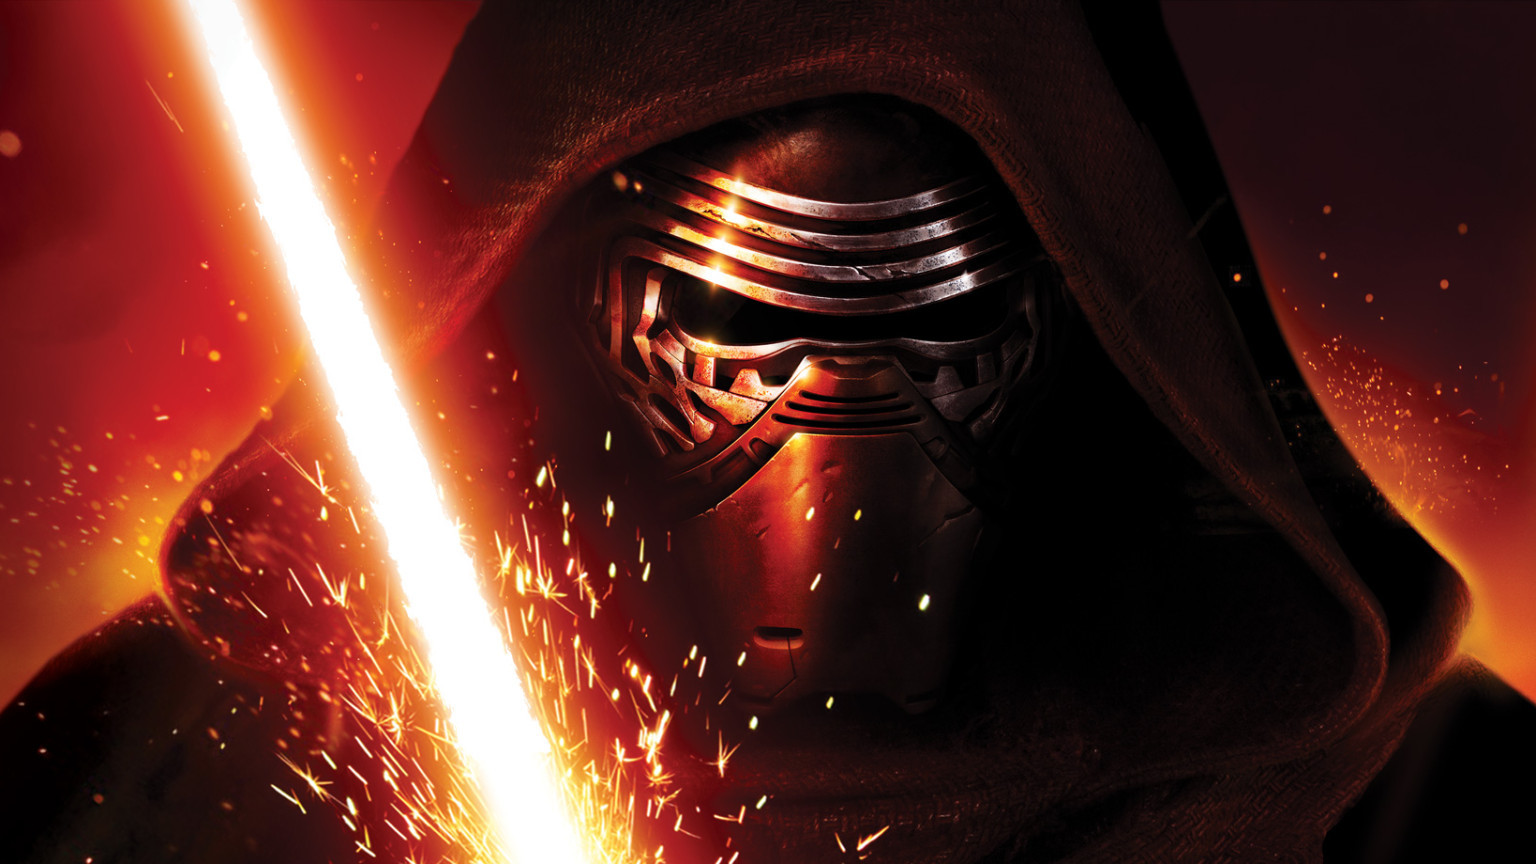 Nieuwe Jedi-actie in korte teaser 'Star Wars: The Force Awakens'!